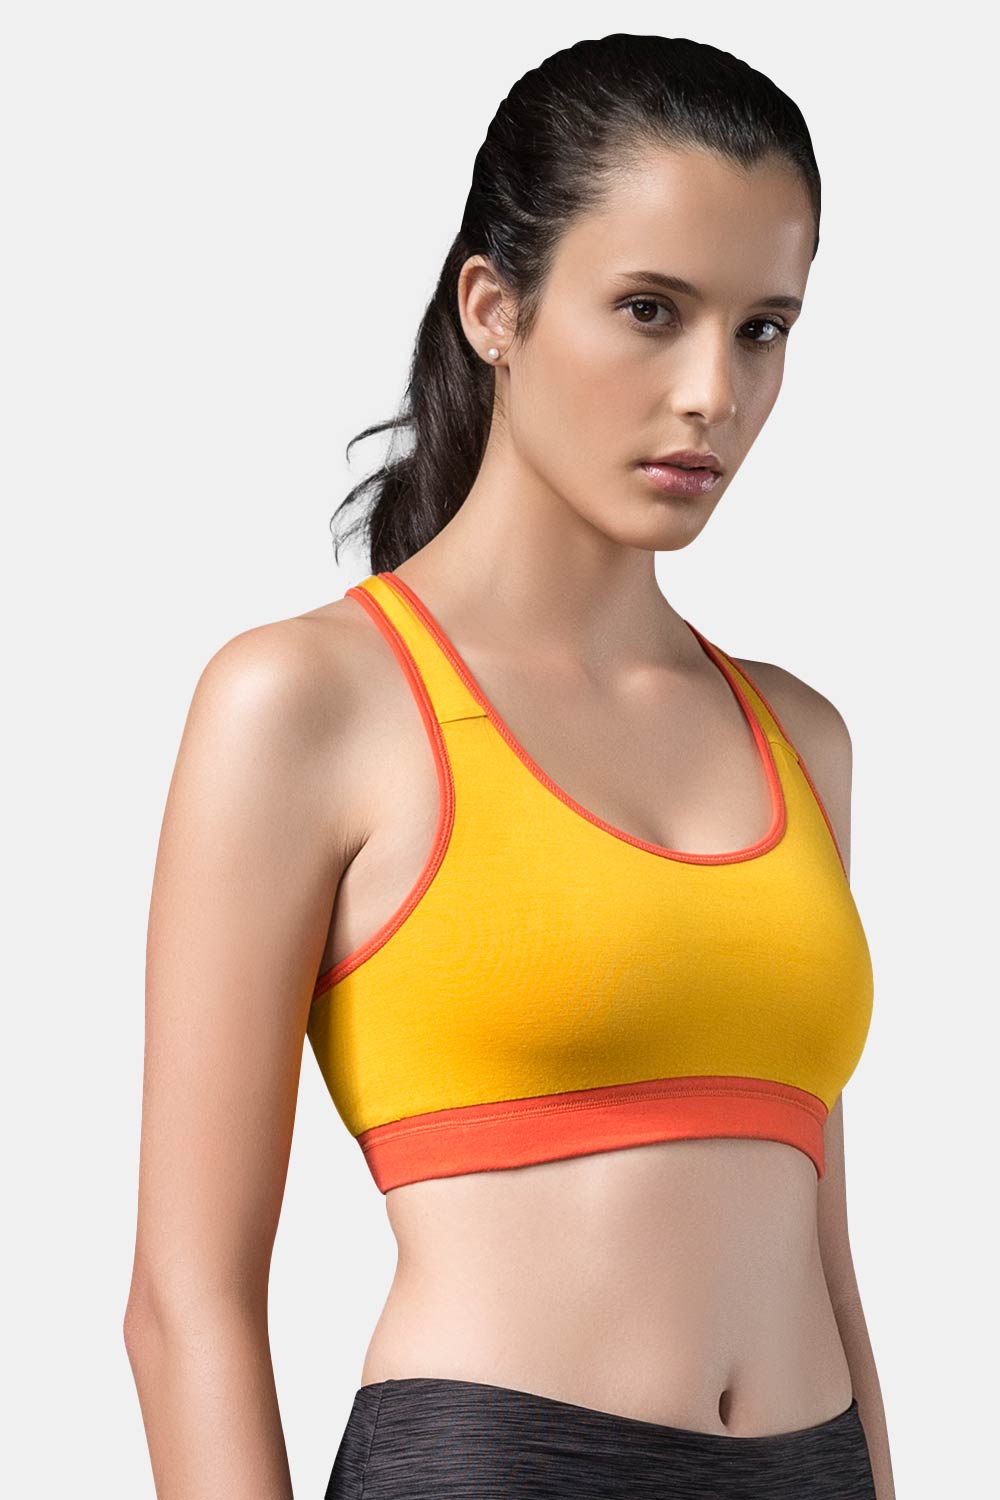 Sgrib - yellow 1 - Women's Fashion Sports Bra - xs-2xl sizes